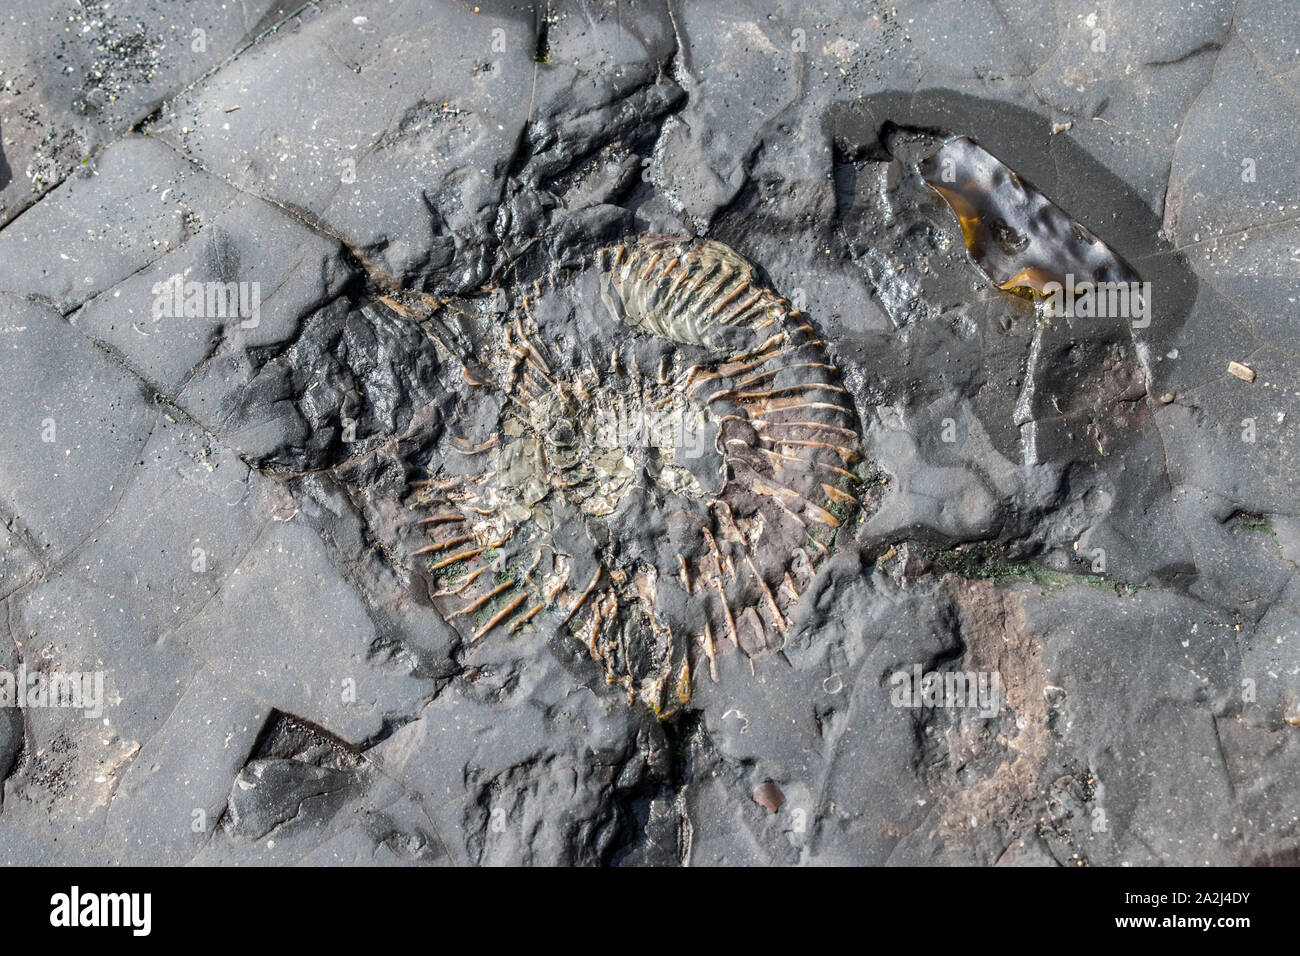 Fossiles ammonite concassée sécher comme la marée était retirée, Kimmeridge Bay, partie de la côte jurassique Wareham, Dorset, Angleterre Banque D'Images